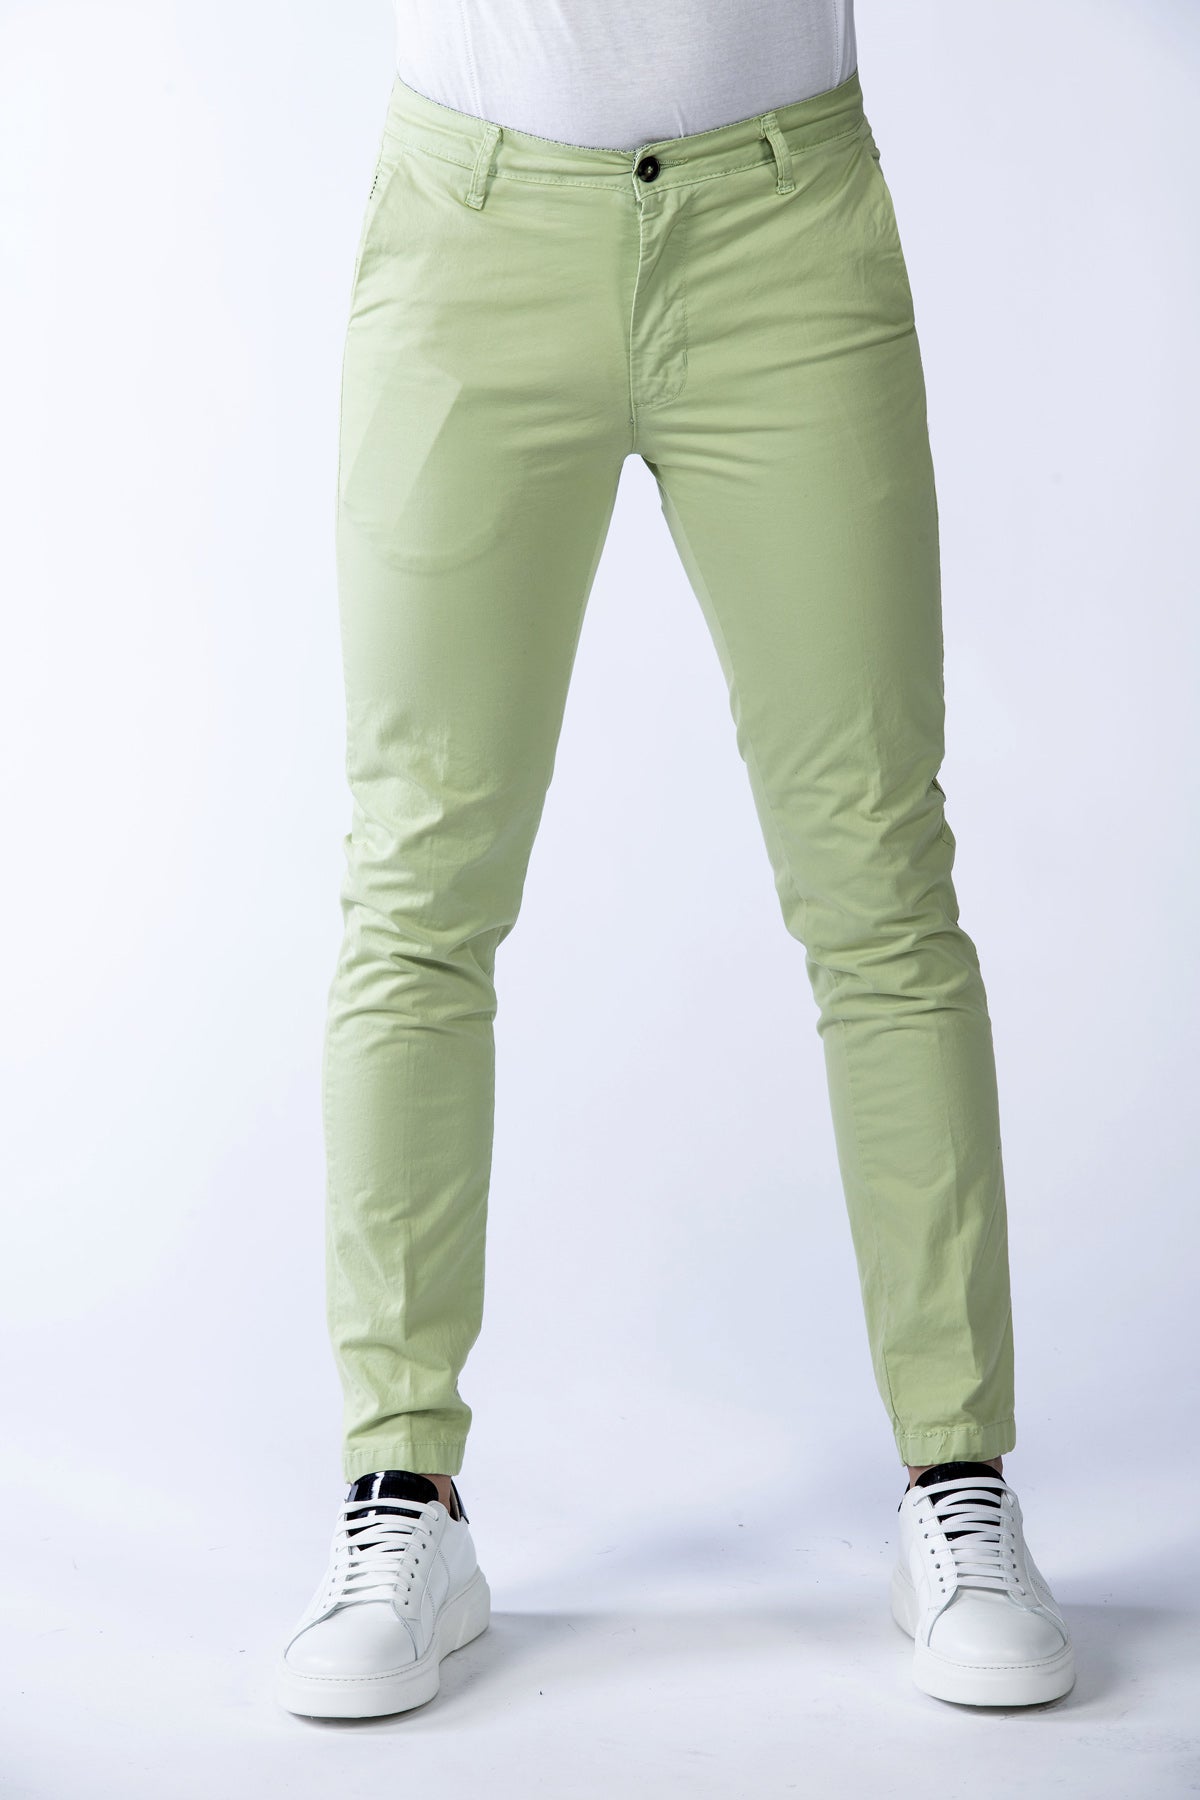 Pánské strečové kalhoty Bakerloo v jablečně zelené barvě